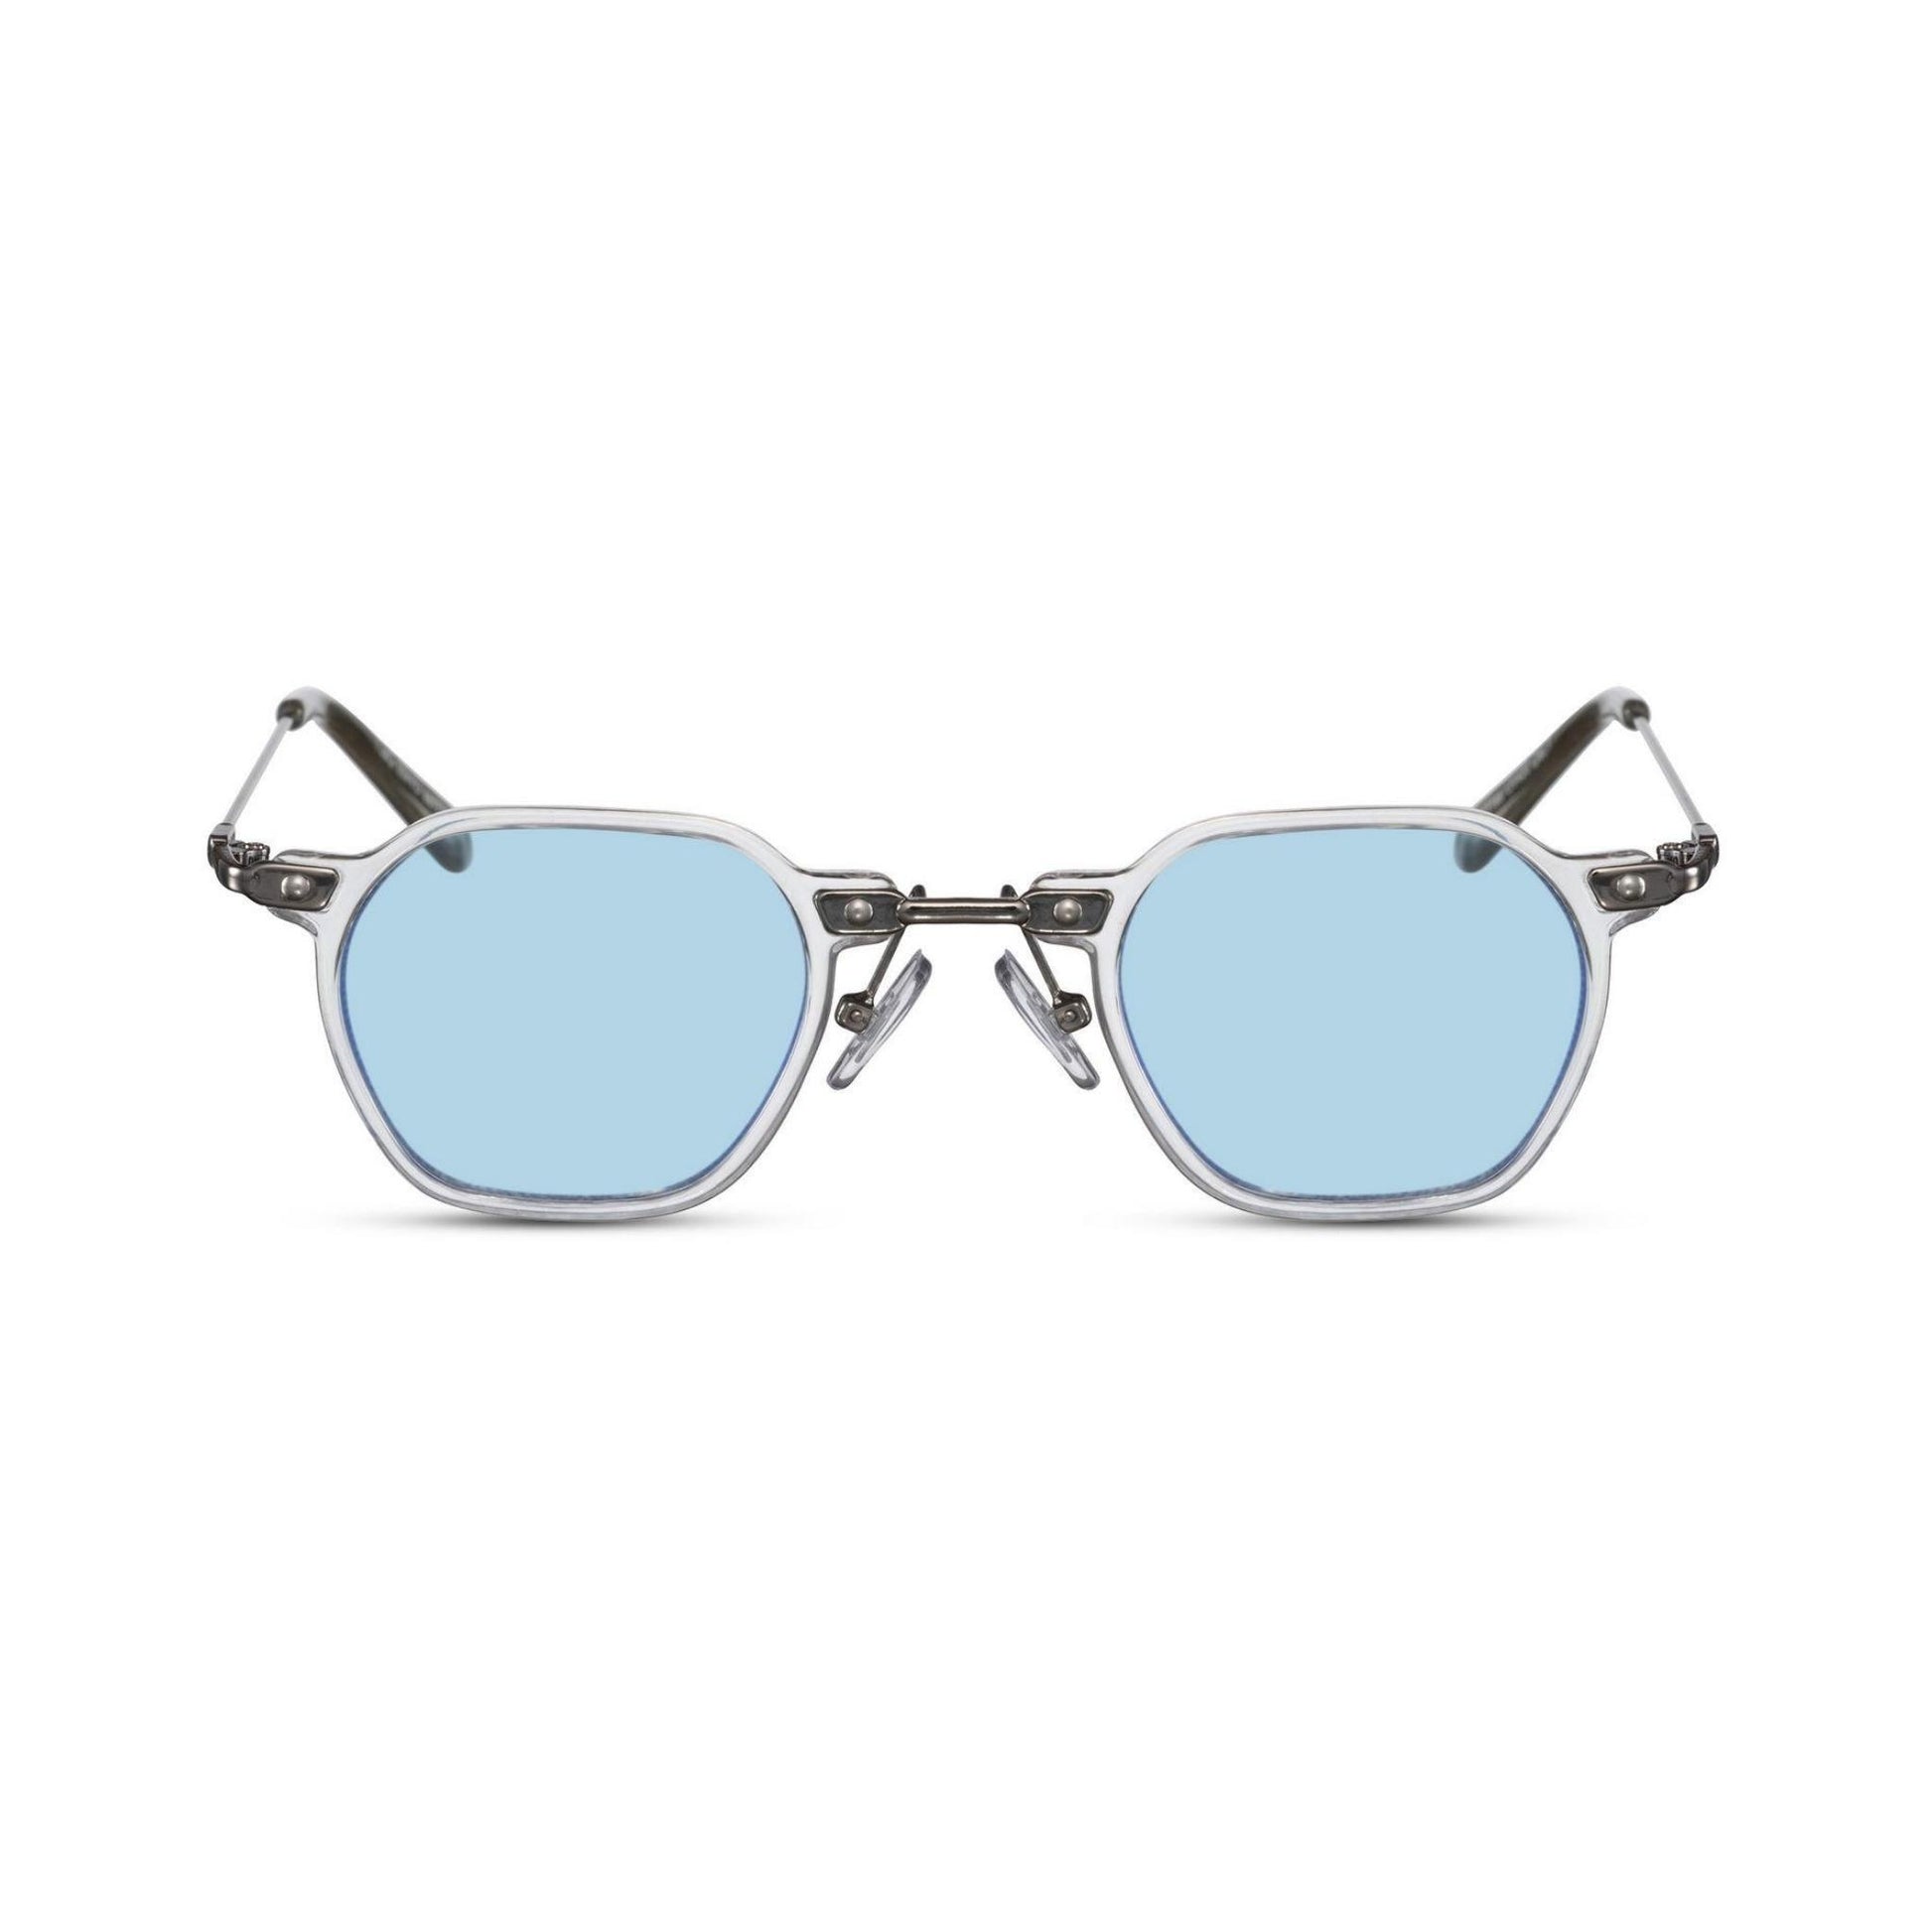 Γυαλιά ηλίου (retro) Mirage της Exposure Sunglasses με προστασία UV400 με άσπρο σκελετό και μπλε φακό.